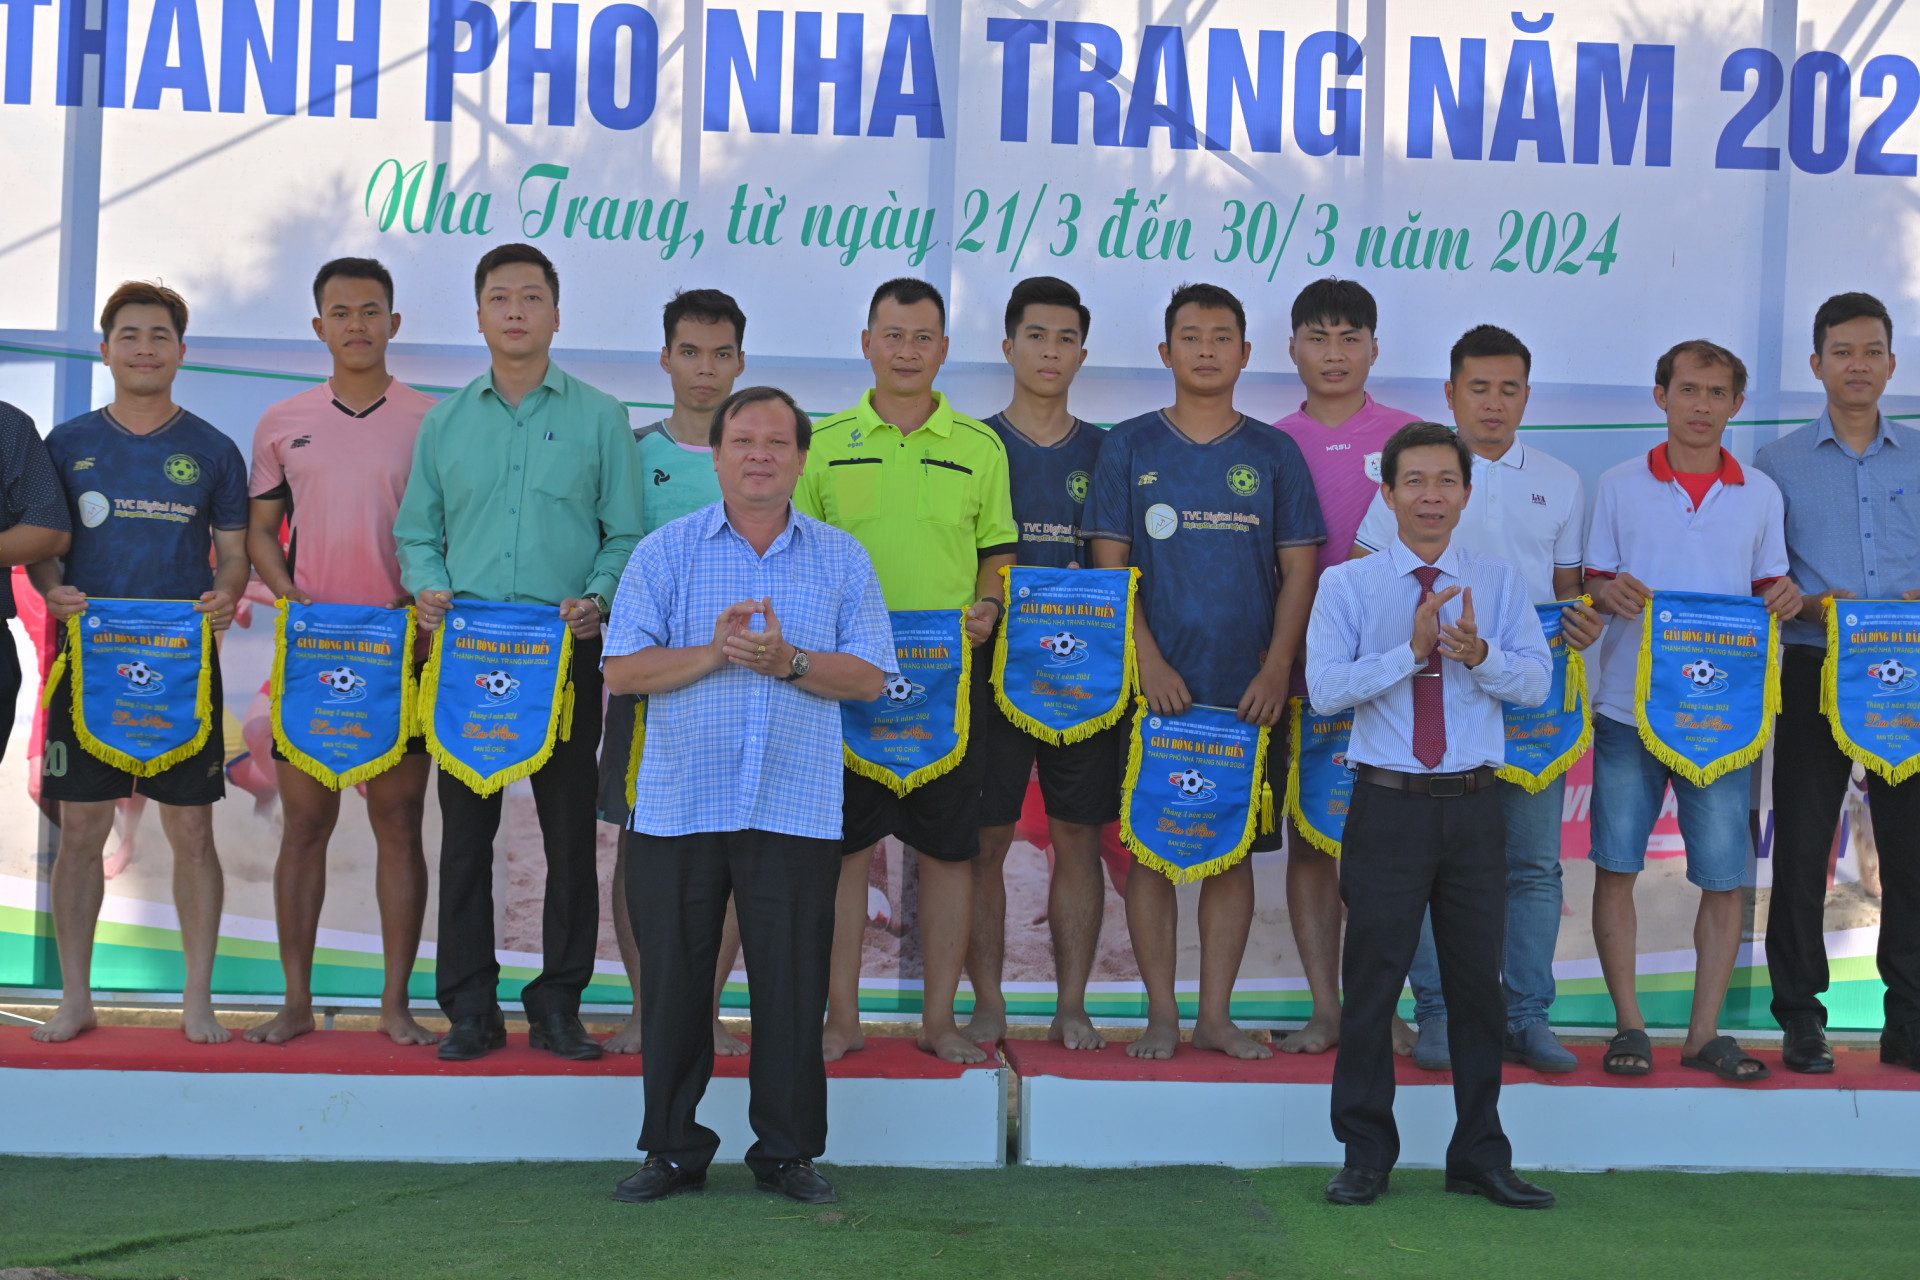 Nha Trang City’s leader giving souvenir flags to the teams

